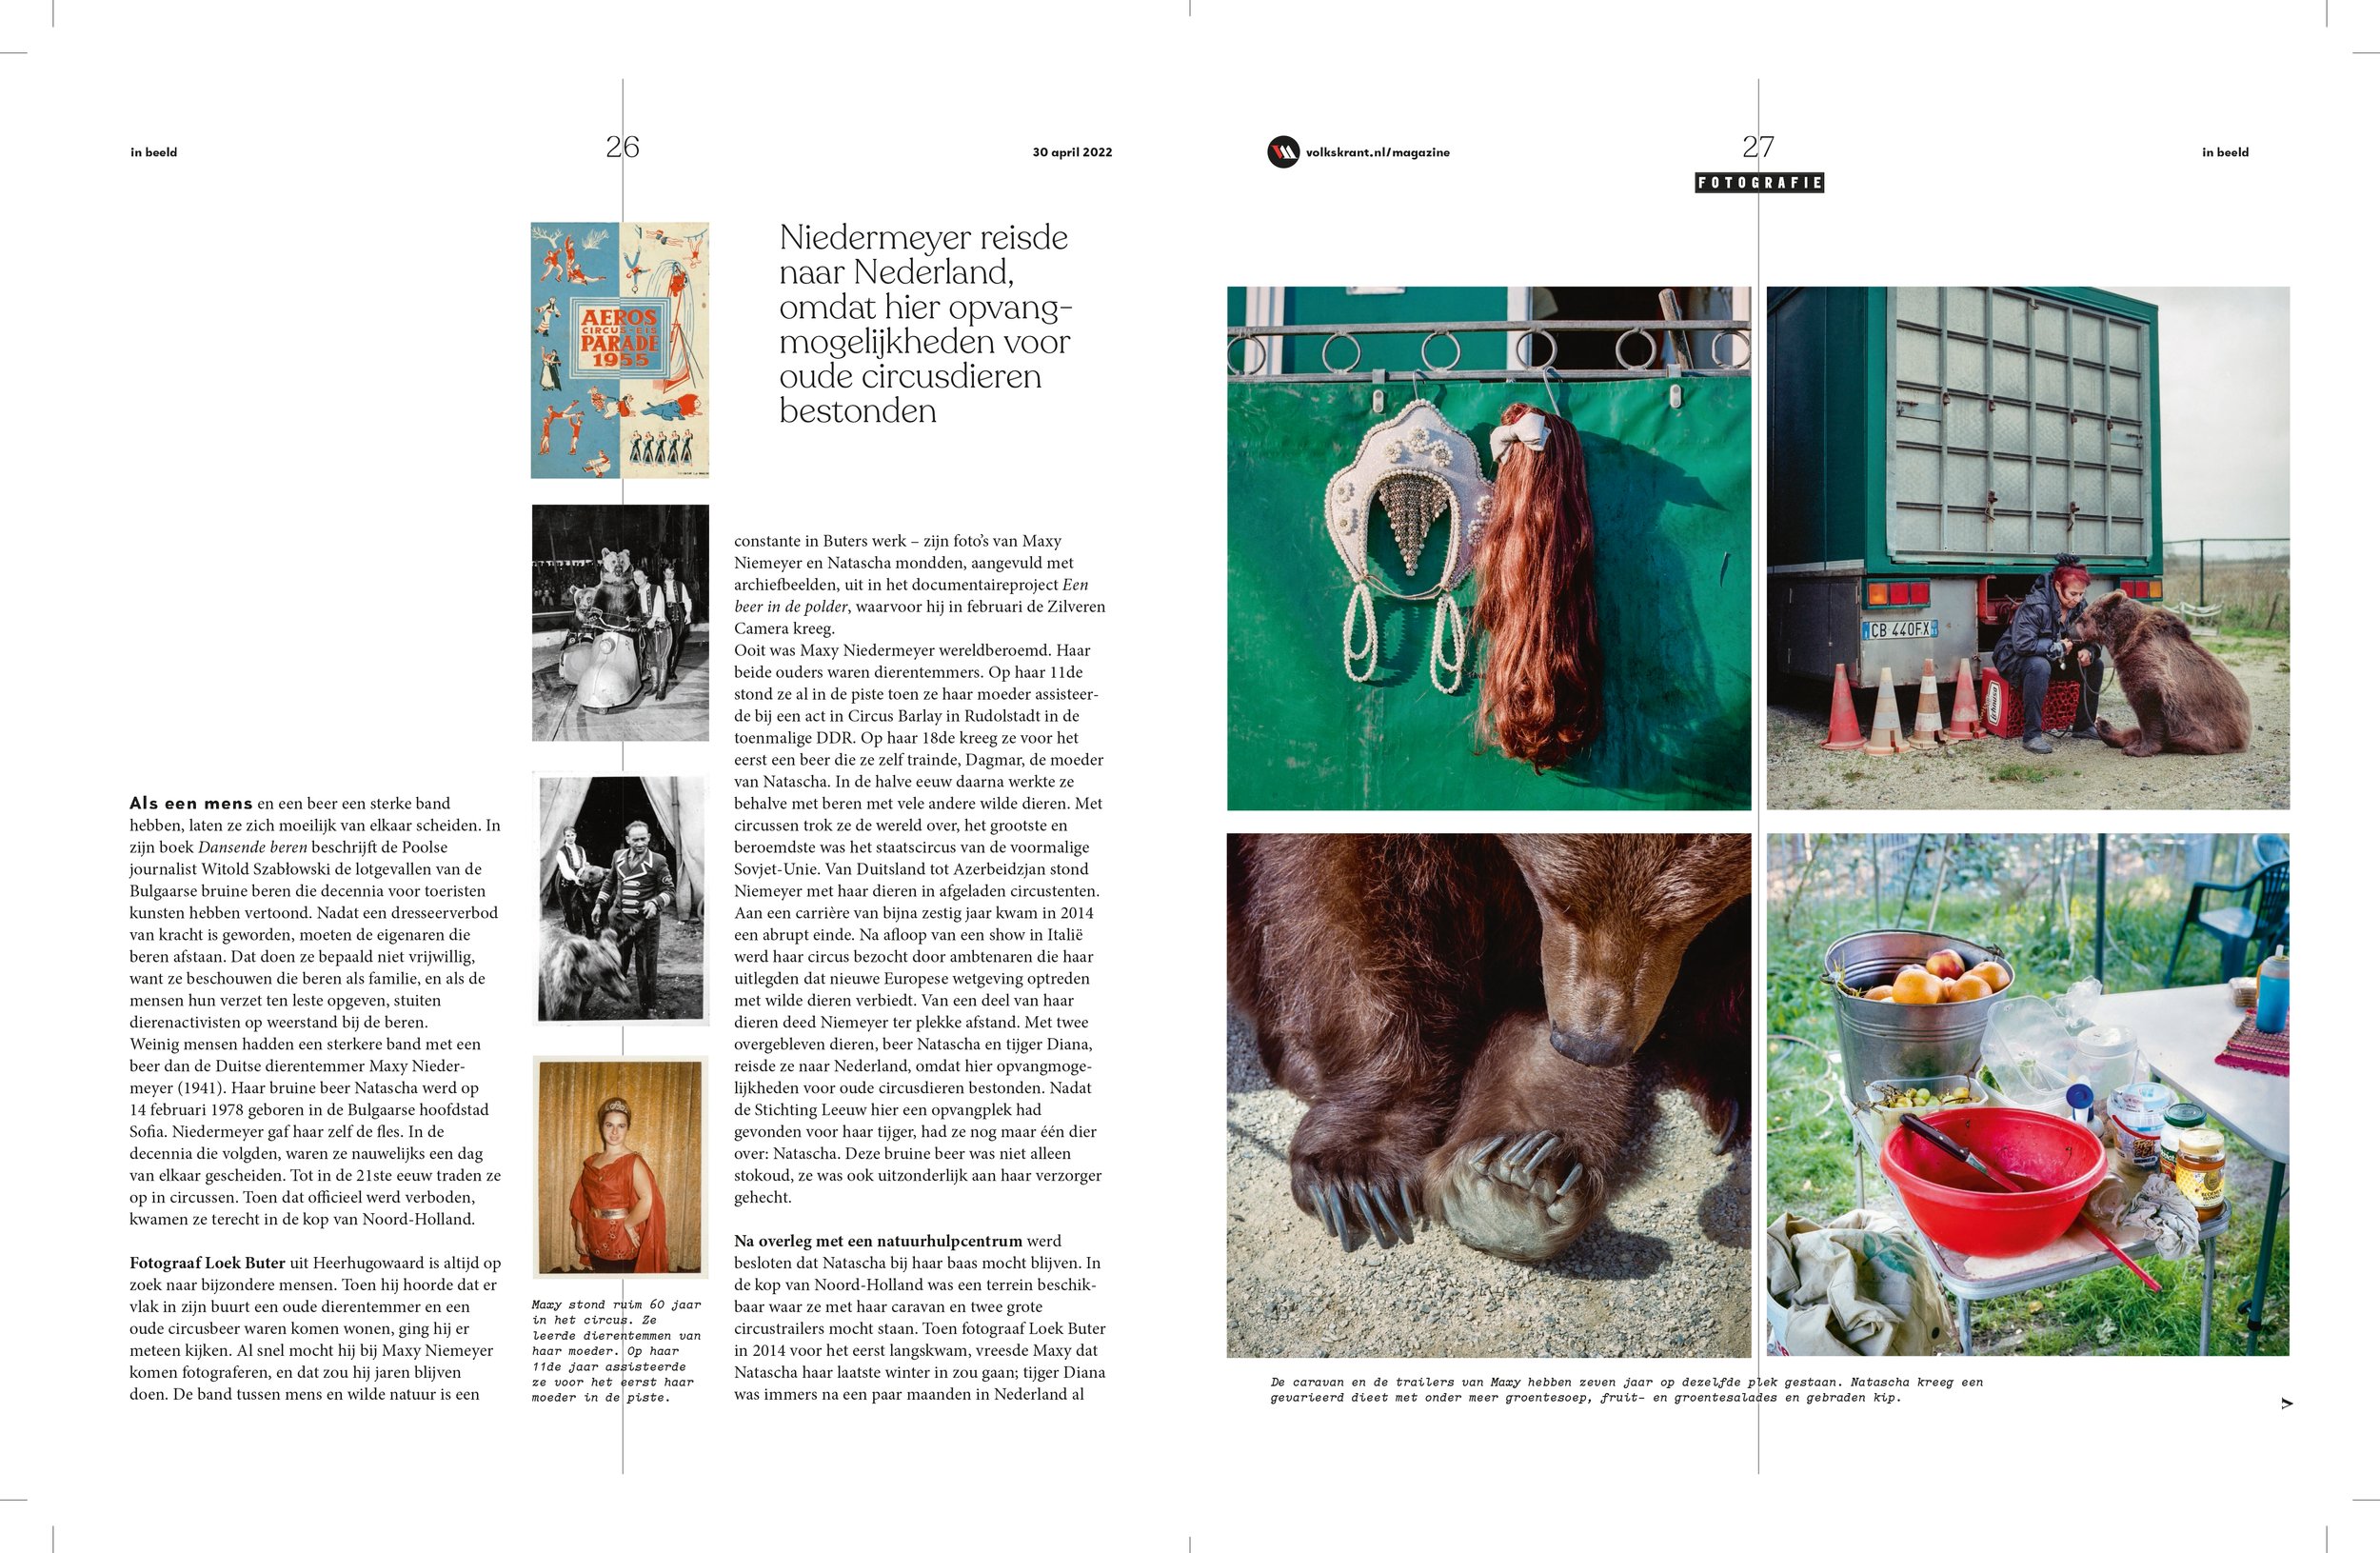 220430 - Een beer in de polder - Volkskrant Magazine_spread 2.jpg